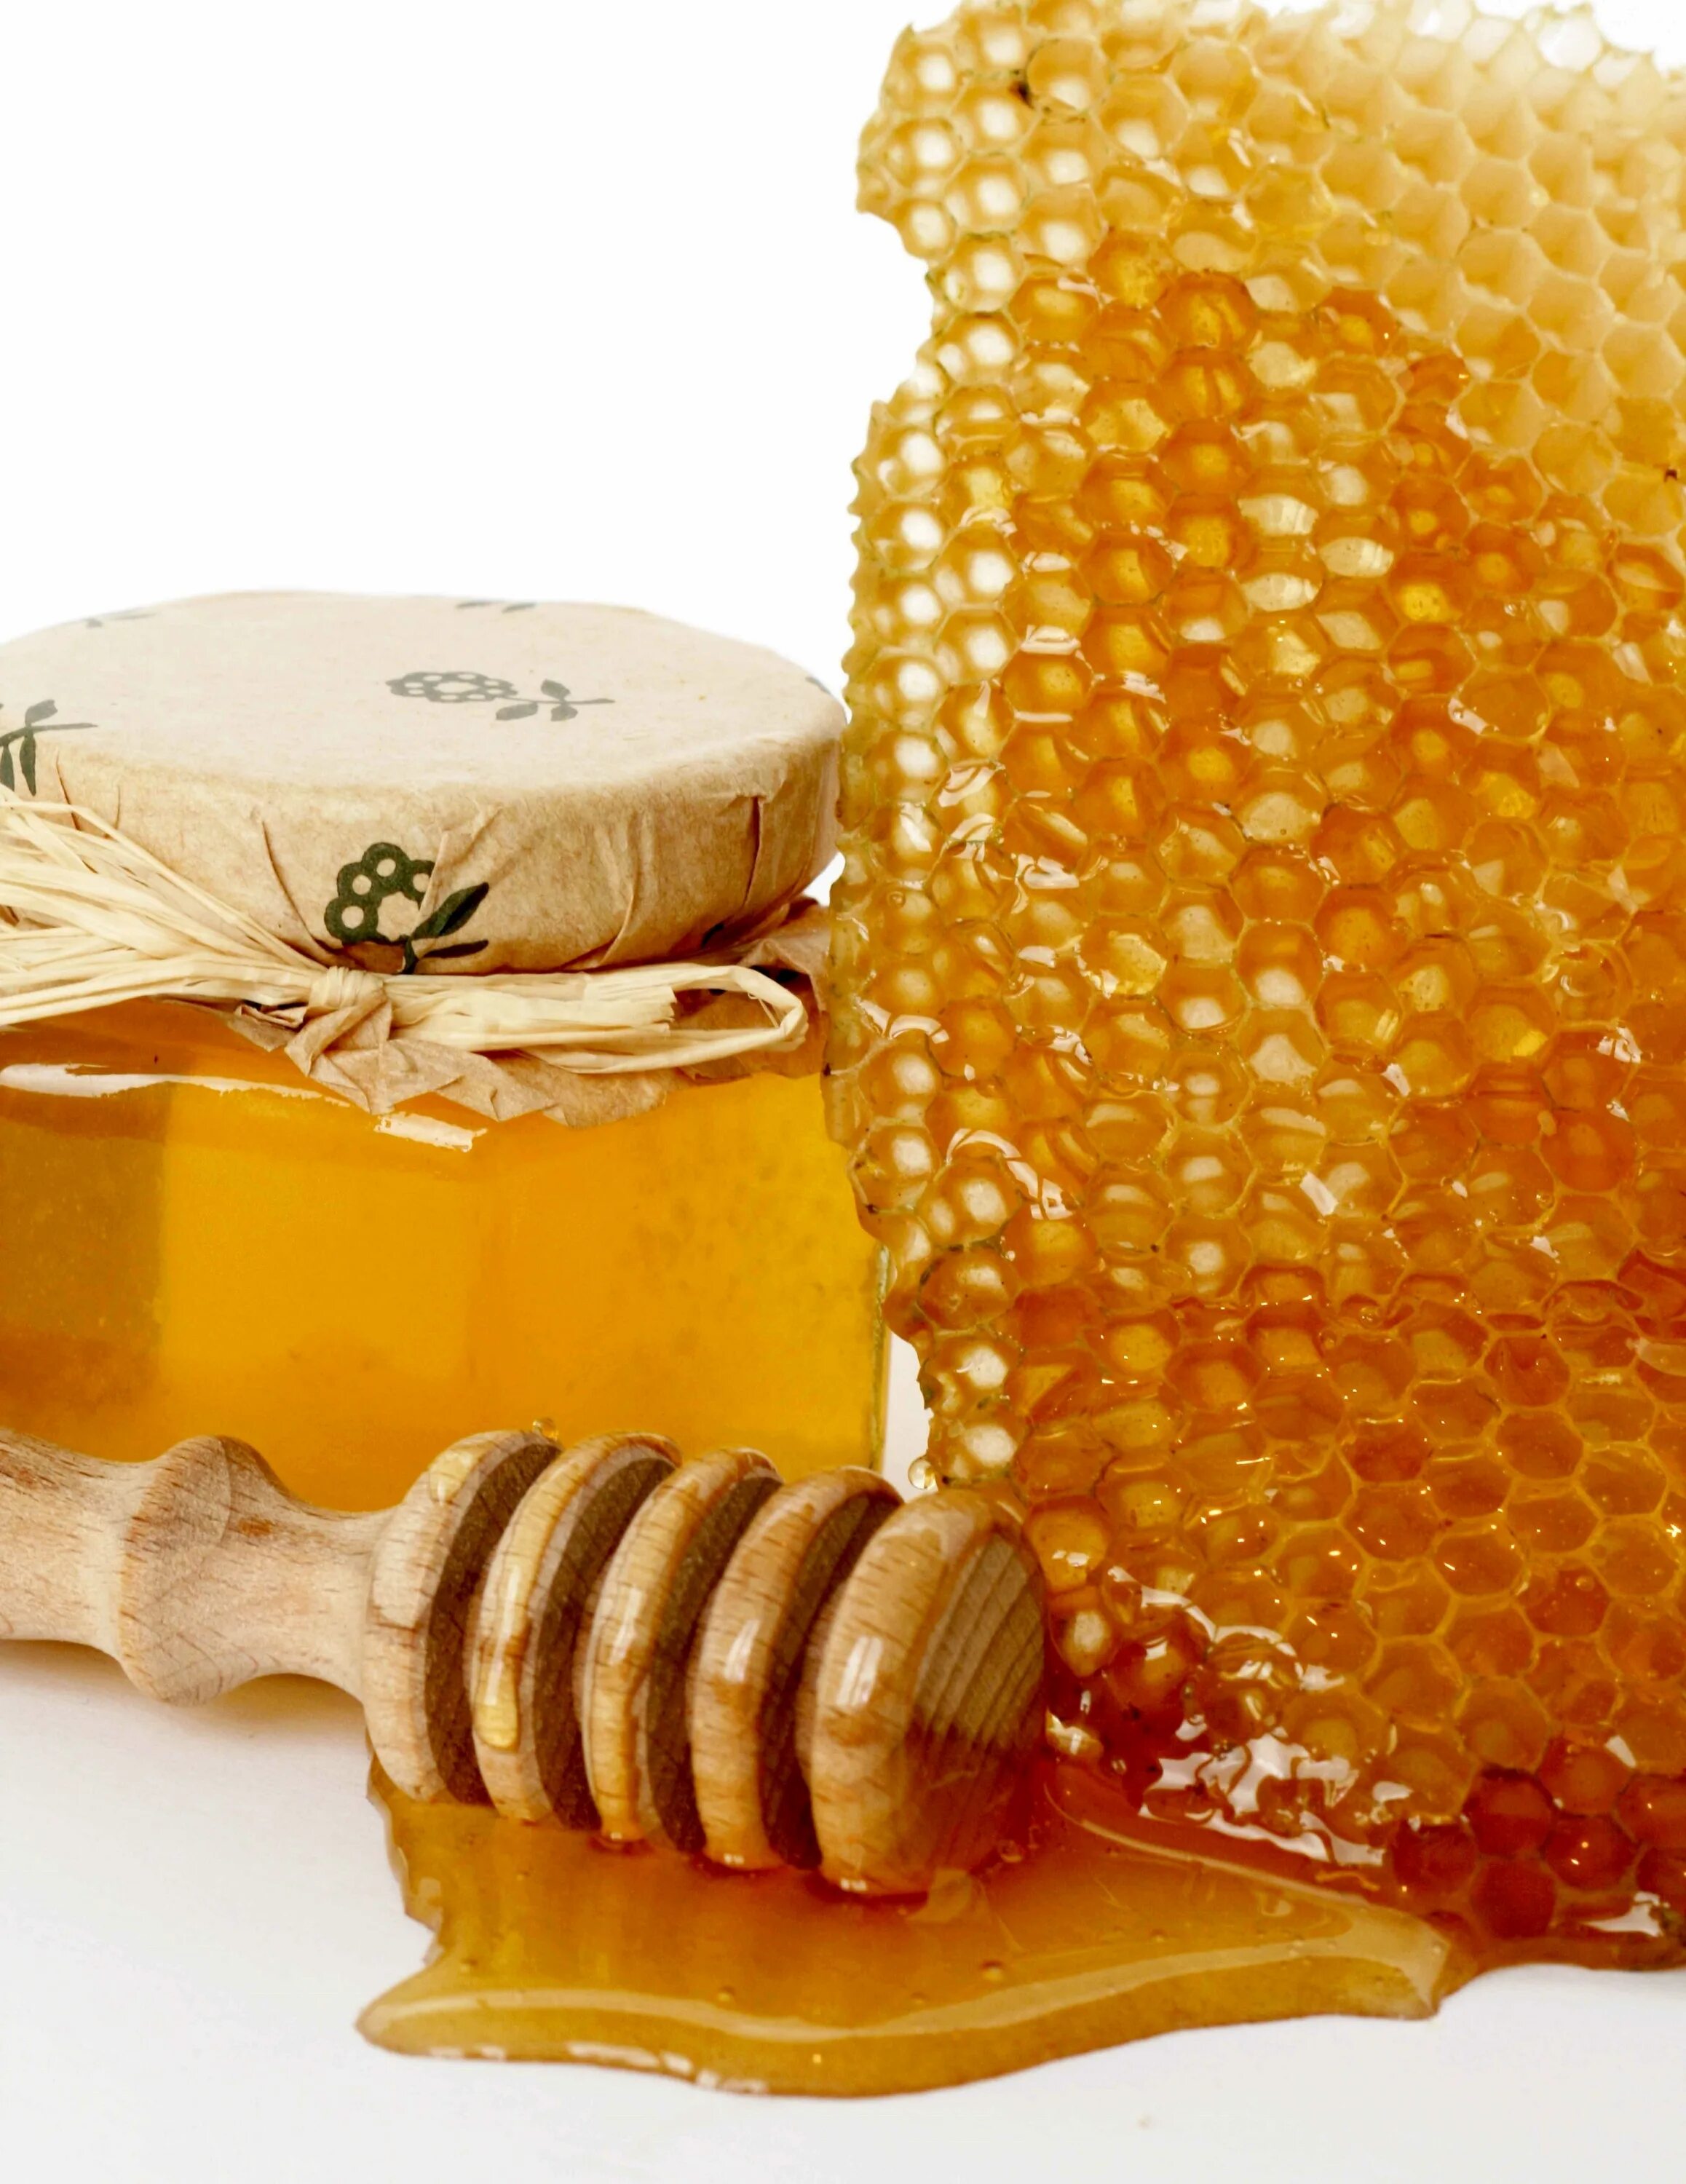 Соты меда. Пчелиный мёд. Мёд и продукты пчеловодства. Красивый мед.